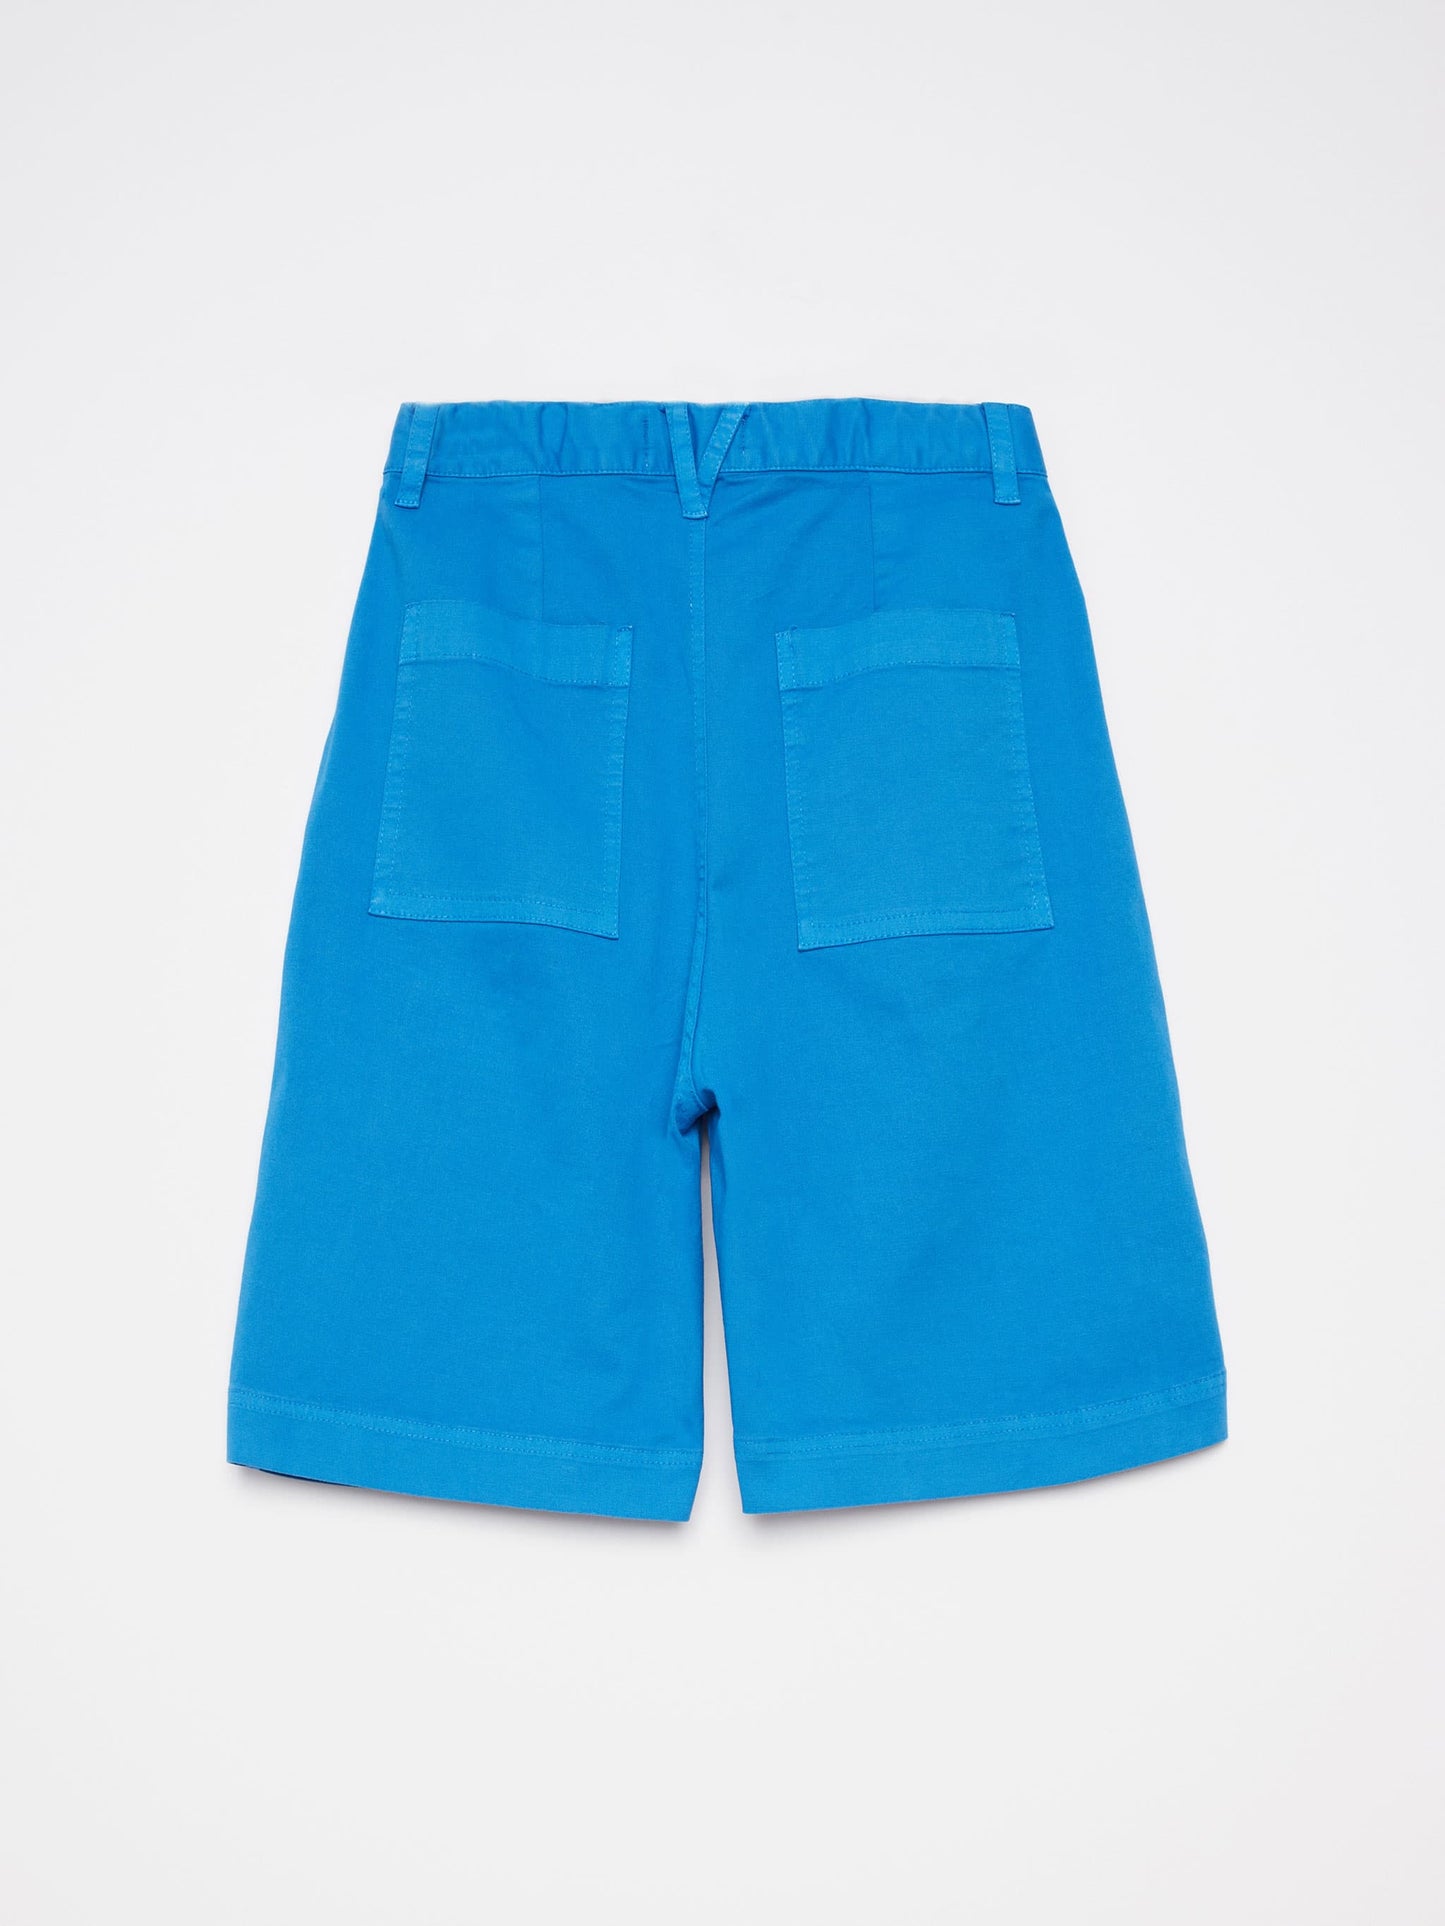 Shorts nº05 French Blue